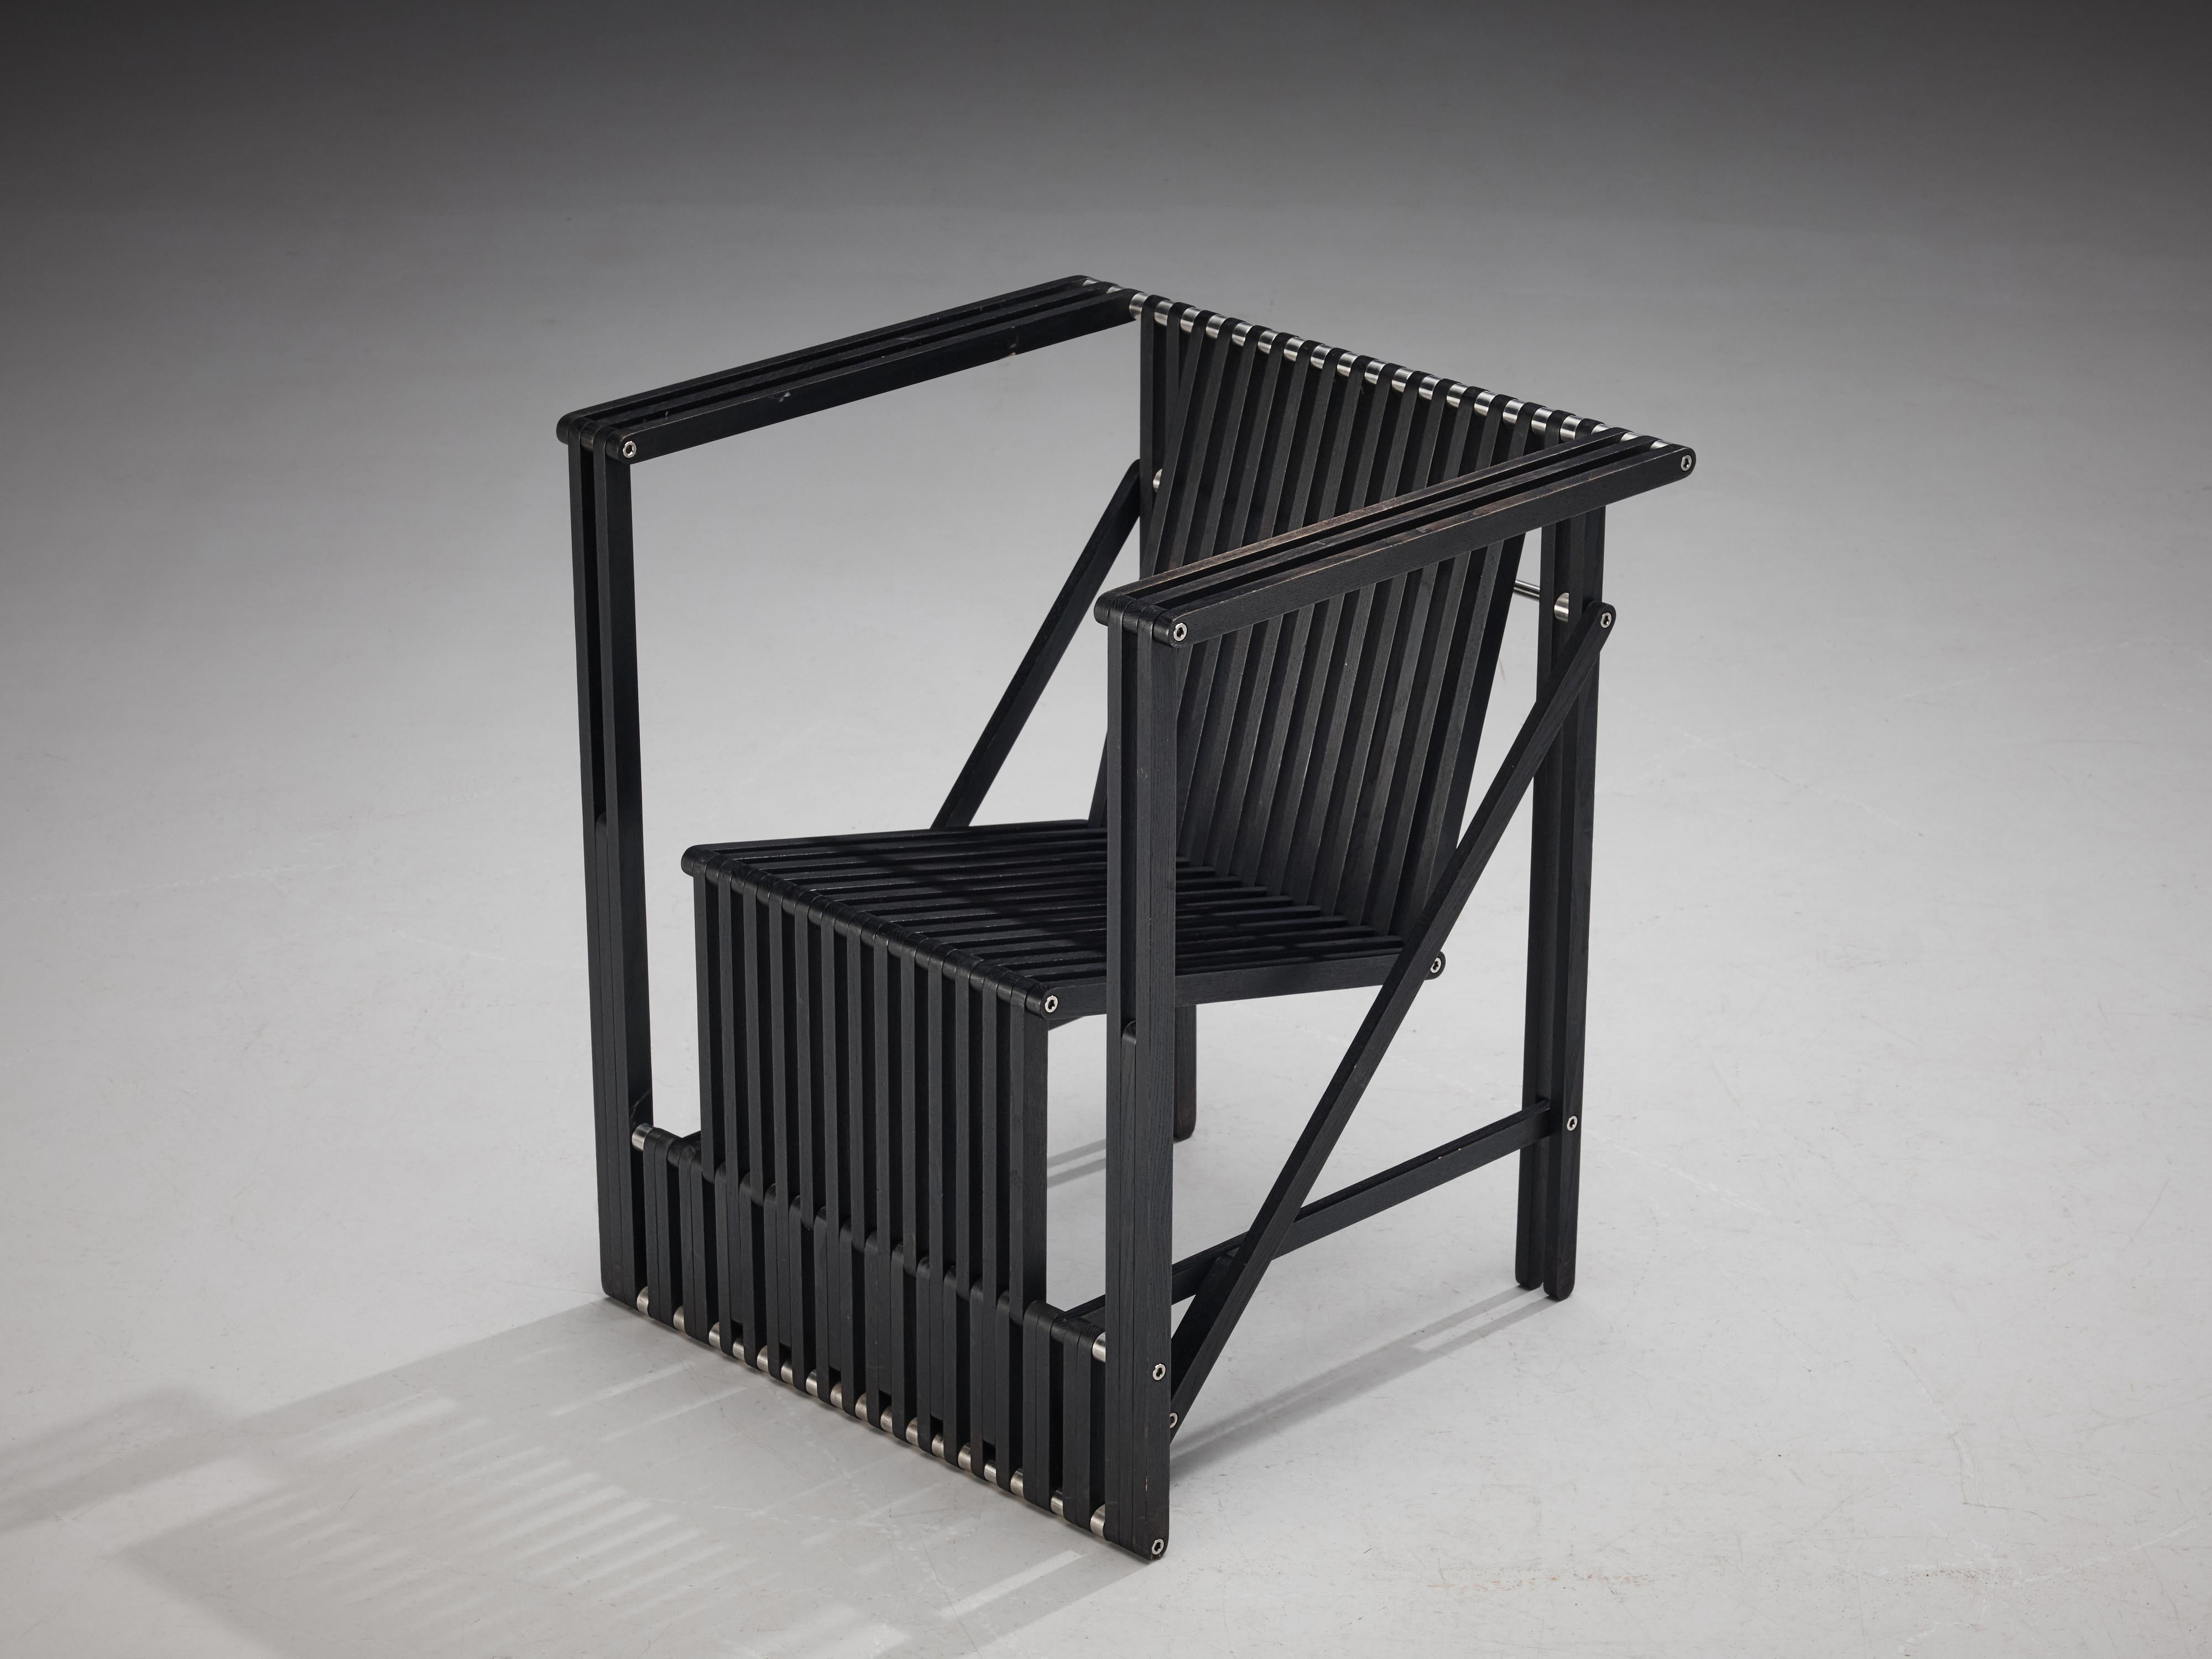 Norbert Wangen, fauteuil pliant, modèle 'Attila', frêne laqué, métal, Allemagne, 1995.

Fauteuil pliant contemporain modèle 'Attila' en frêne laqué noir conçu par le designer allemand Norbert Wangen (1962). Son cadre inventif contient plusieurs